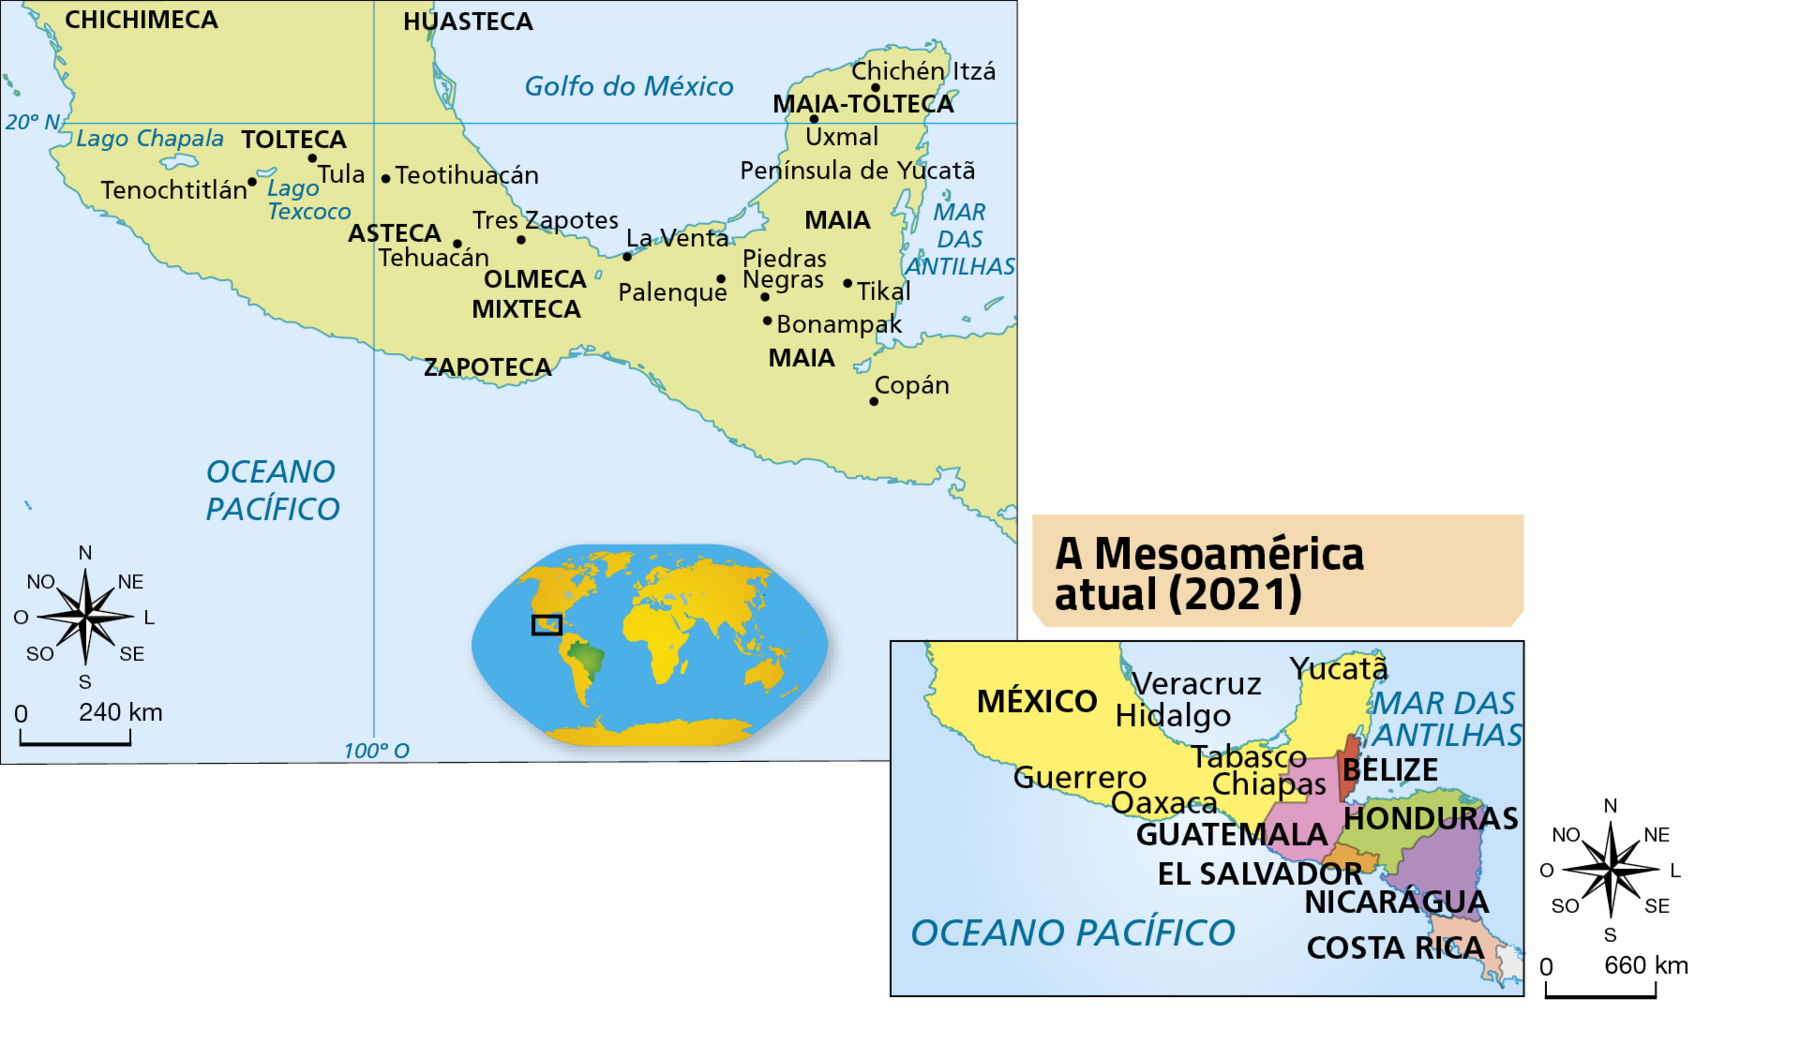 Mapa. Mesoamérica: civilizações. O mapa apresenta a região que hoje corresponde à parte sul do México, Guatemala, Belize, El Salvador, Honduras, Nicarágua e Costa Rica. Na área mais ao norte do Lago Chapala ficava a civilização chichimeca e, mais próximo do Golfo do México, a huasteca. Na altura do Lago Chapala e do Lago Texcoco, e das cidades de Tenochtitlán, Tula e Teotihuacán, ficava a civilização tolteca. Mais ao sul, perto das cidades de Tehuacán e Tres Zapotes, ficava a civilização asteca. Mais ao centro, estavam as civilizações olmeca e mixteca e, mais próximo do Oceano Pacífico, a zapoteca. Em seguida, na região das cidades de La Venta, Palenque, Piedras Negras, Bonampak, Tikal e Copán, estava a civilização maia. Na Península de Yucatã, abrangendo as cidades de Chichén Itzá e Uxmal, ficava a civilização maia-tolteca.
No canto inferior esquerdo, a rosa dos ventos e escala de 0 a 240 quilômetros.

Mapa. A Mesoamérica atual (2021). Apresenta o sul da América do Norte e parte da América Central com a divisão política dos países.
O México é representado parcialmente, considerando apenas a porção sul do território. Os demais países representados são: Guatemala, Belize, El Salvador, Honduras, Nicarágua e Costa Rica. No território mexicano estão indicadas as regiões de Yucatã, Veracruz, Hidalgo, Tabasco, Chiapas, Guerrero e Oaxaca. No lado direito, fora do mapa, a rosa dos ventos e escala de 0 a 660 quilômetros.